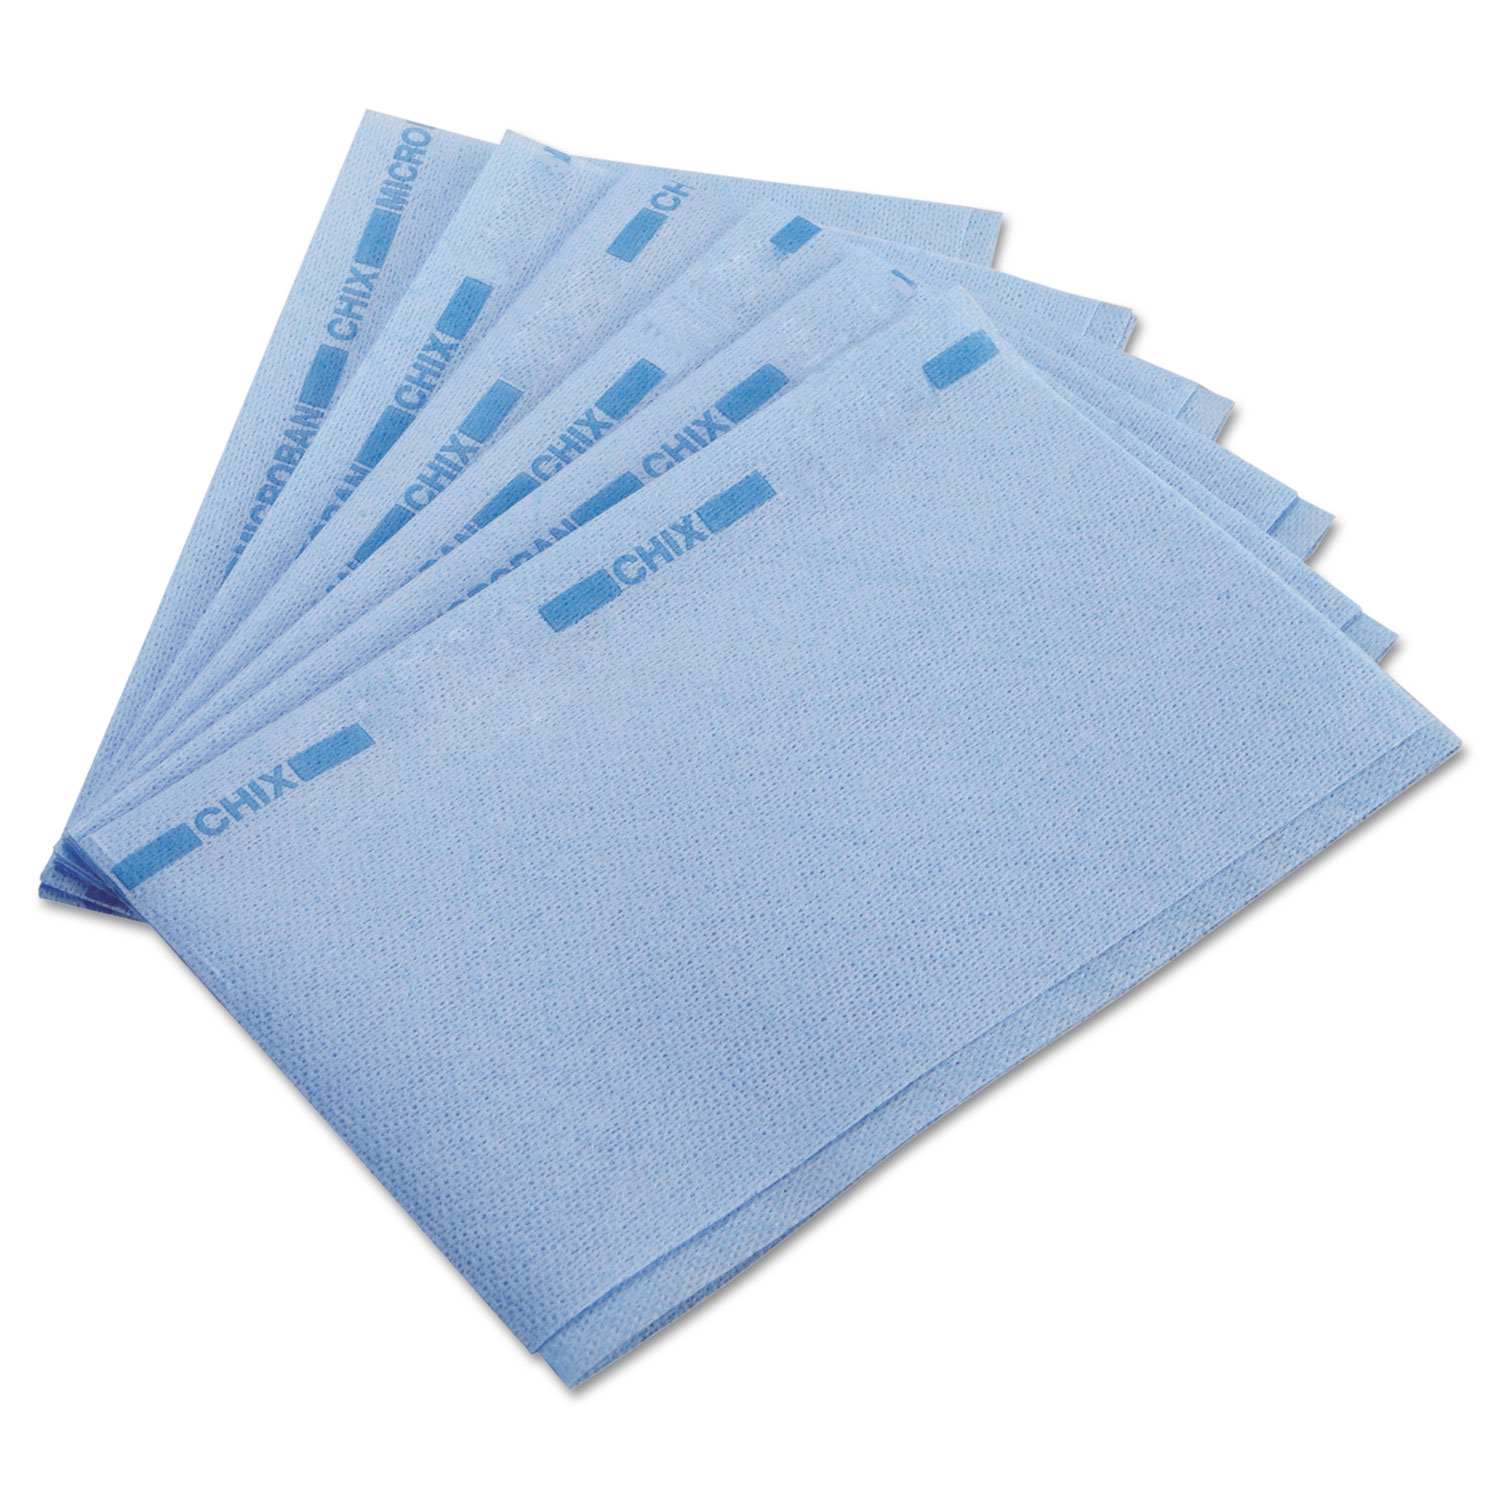  Chix CHI 8253 Food Service Towels, 13 x 21, Blue, 150/Carton (CHI8253) 